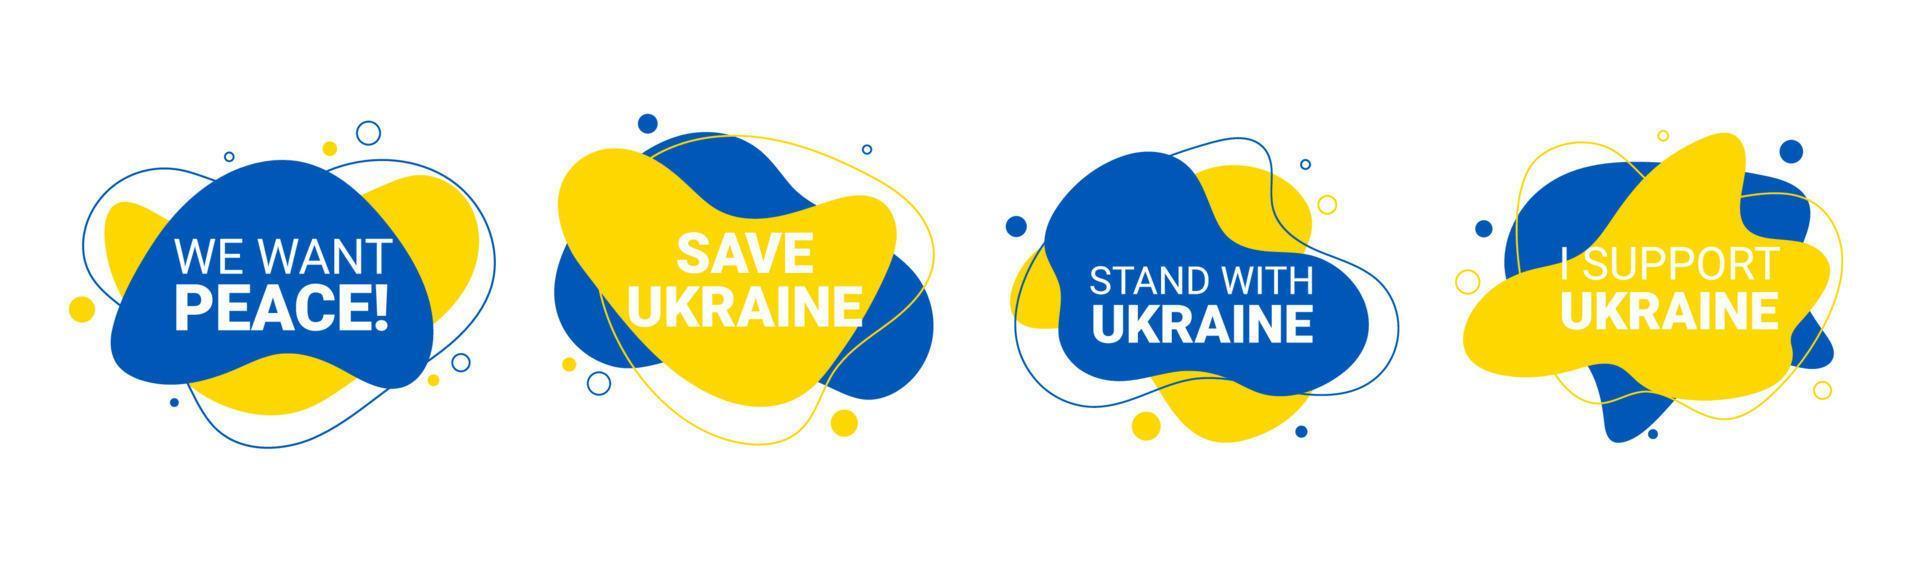 vecteur 4 illustration de fond liquide et fluide de nous voulons la paix, sauvons l'ukraine, soutenons, je soutiens le concept avec signe d'interdiction sur le drapeau de l'ukraine. pas de guerre et d'attaque militaire en ukraine affiche.